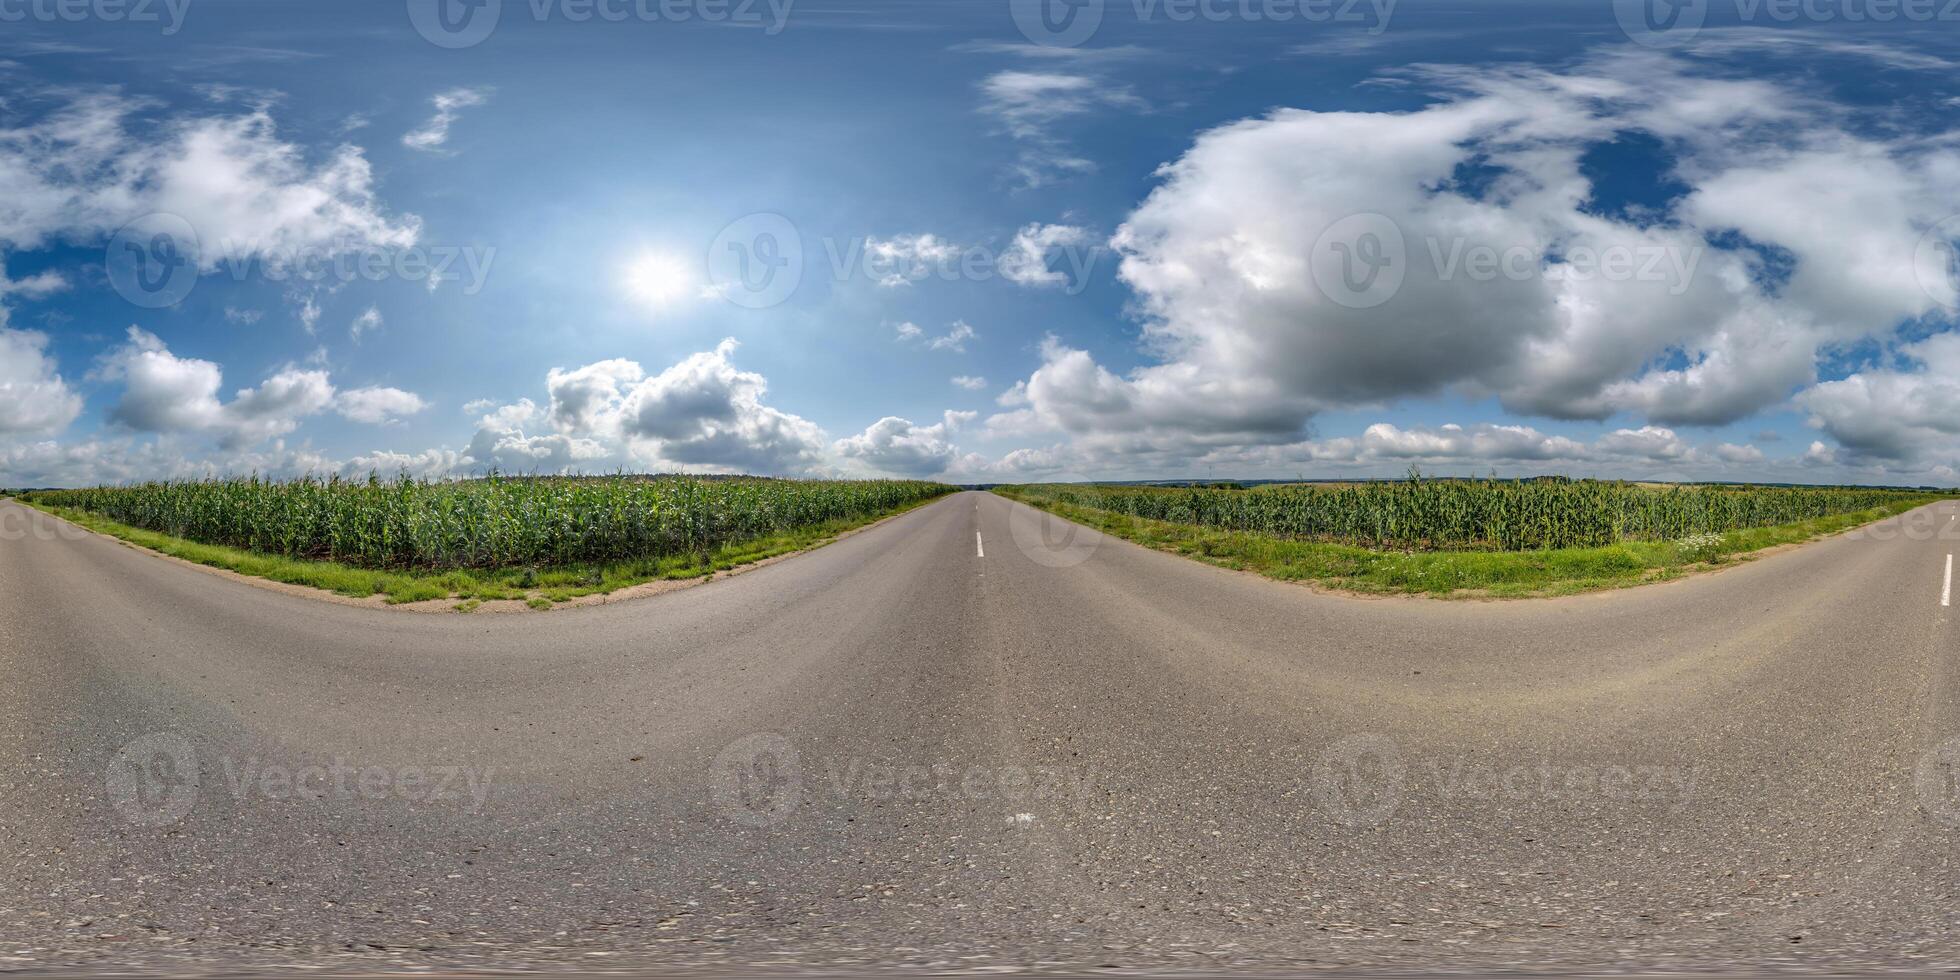 esférico 360 hdri panorama en antiguo asfalto la carretera entre maíz campos con nubes y Dom en azul cielo en equirrectangular sin costura proyección, como bóveda celeste reemplazo en zumbido panorámicas, juego desarrollo foto